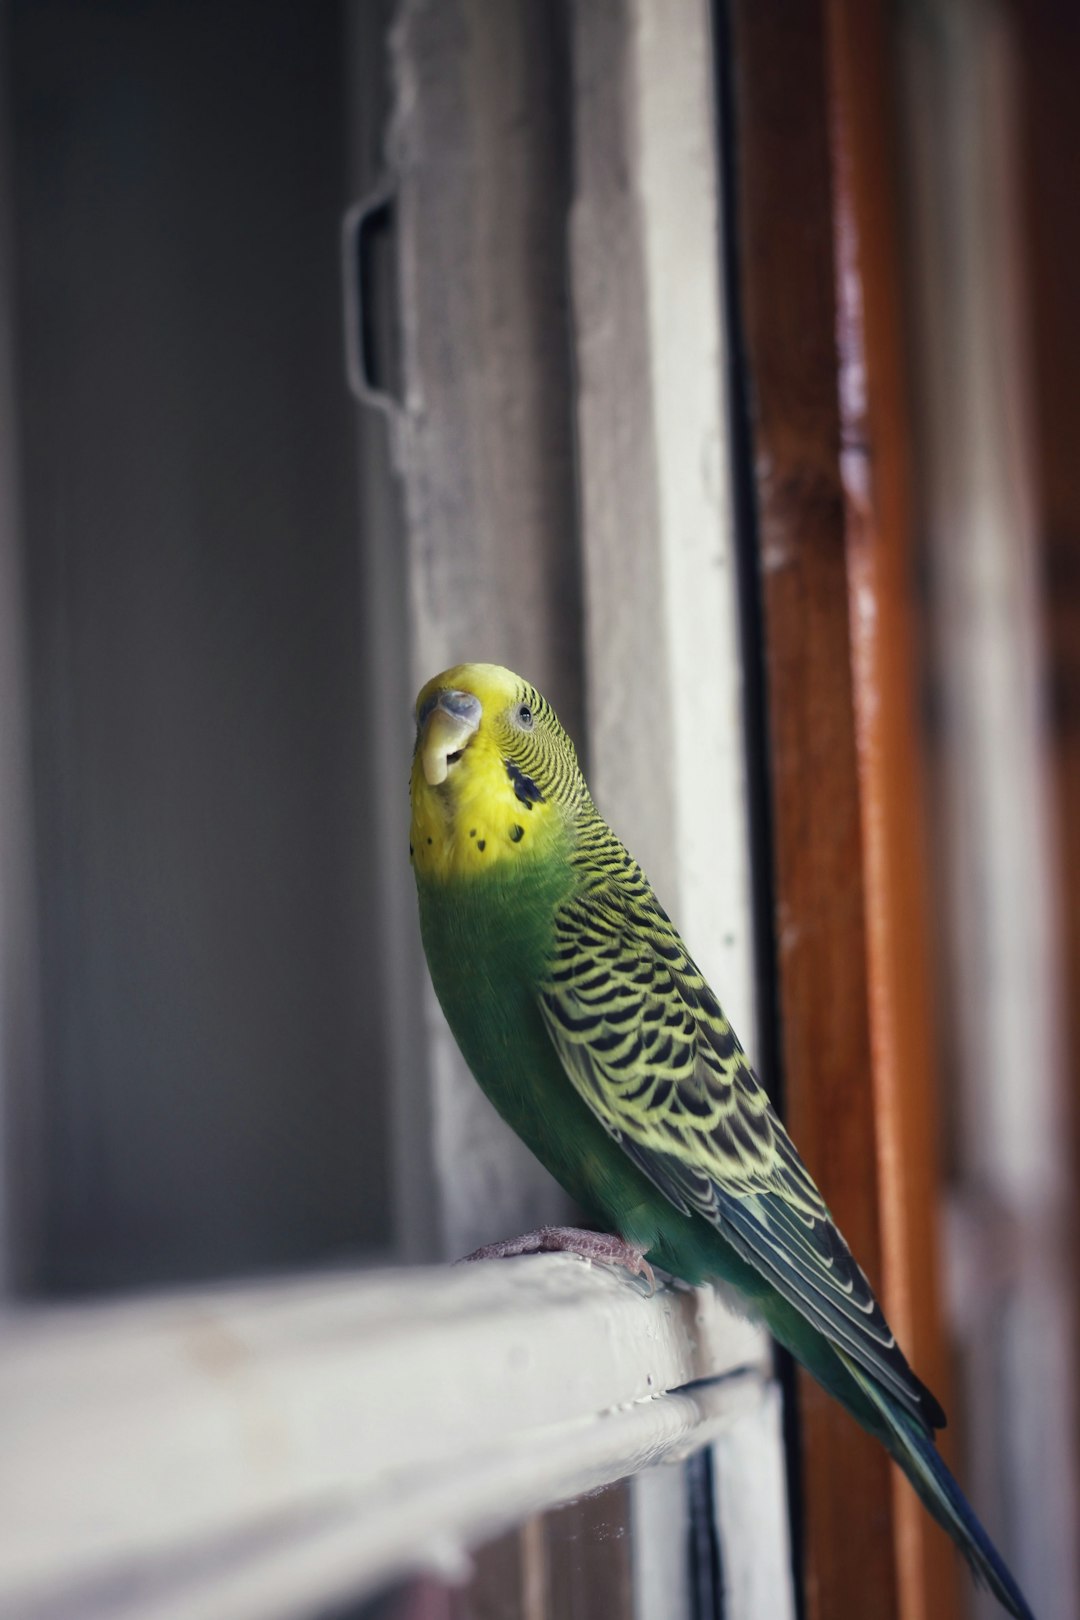 green and yellow bird on white textile